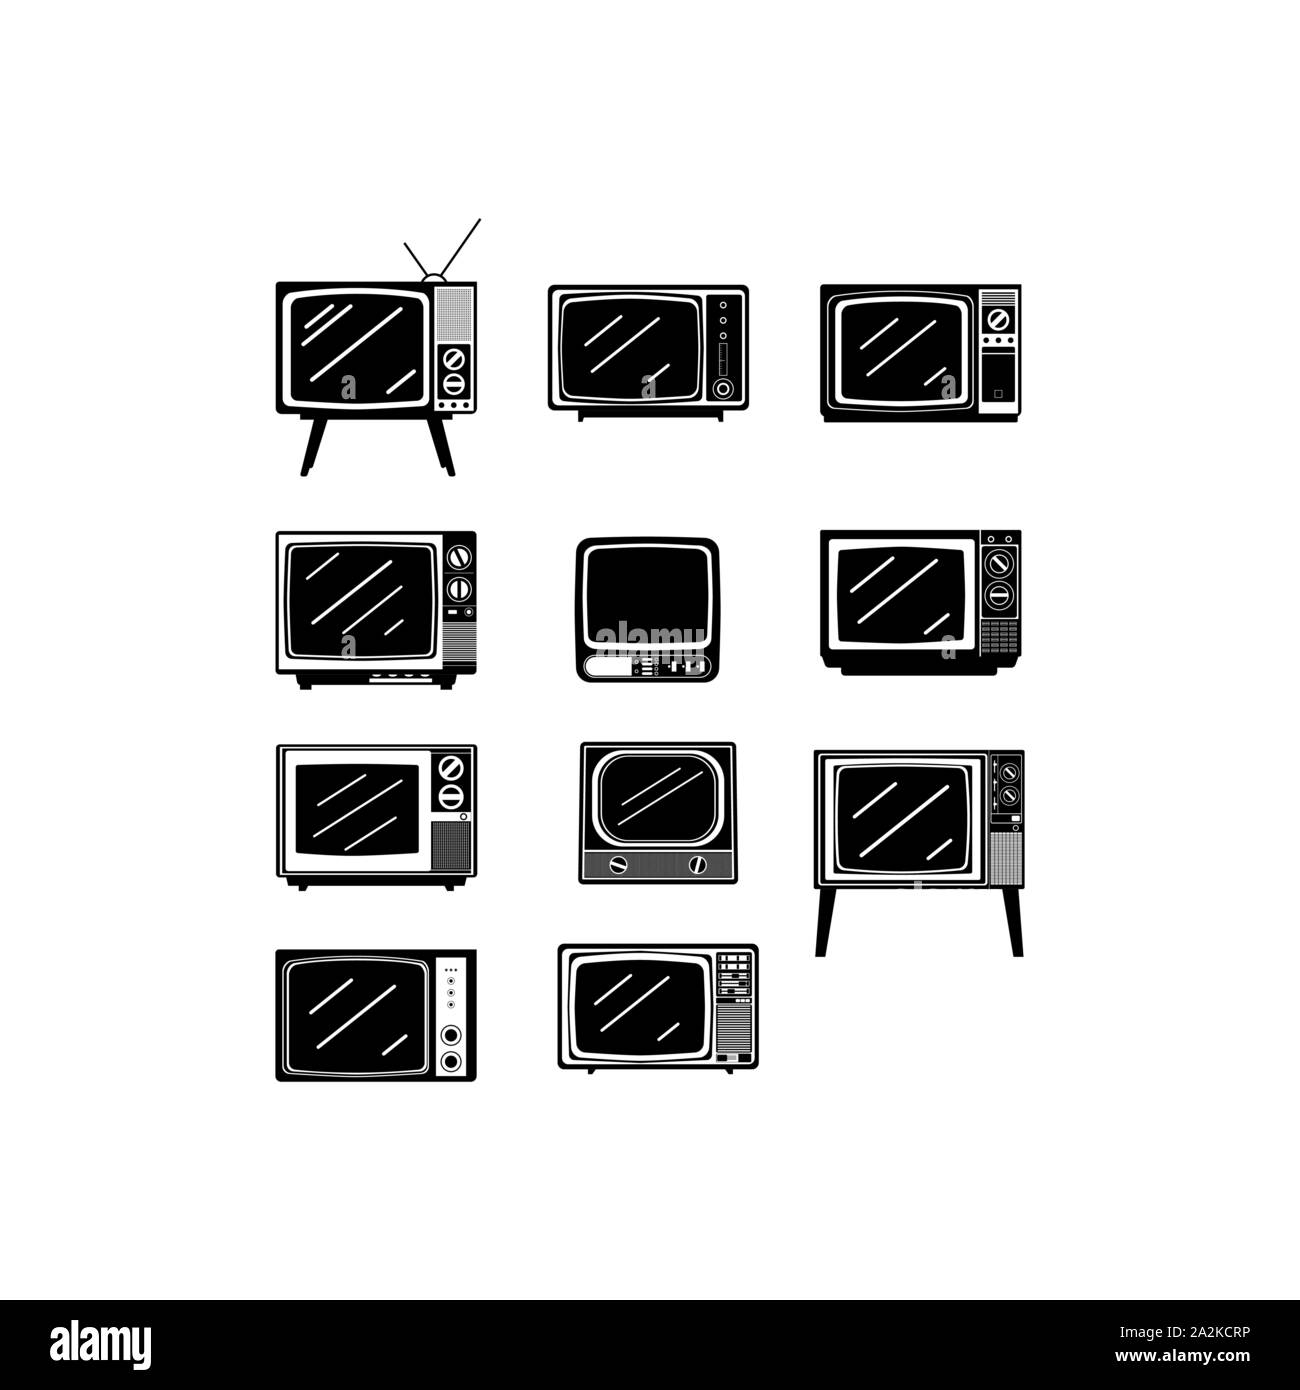 Black retro television icon vector set design image. Old style tv retor design vector image Stock Vector